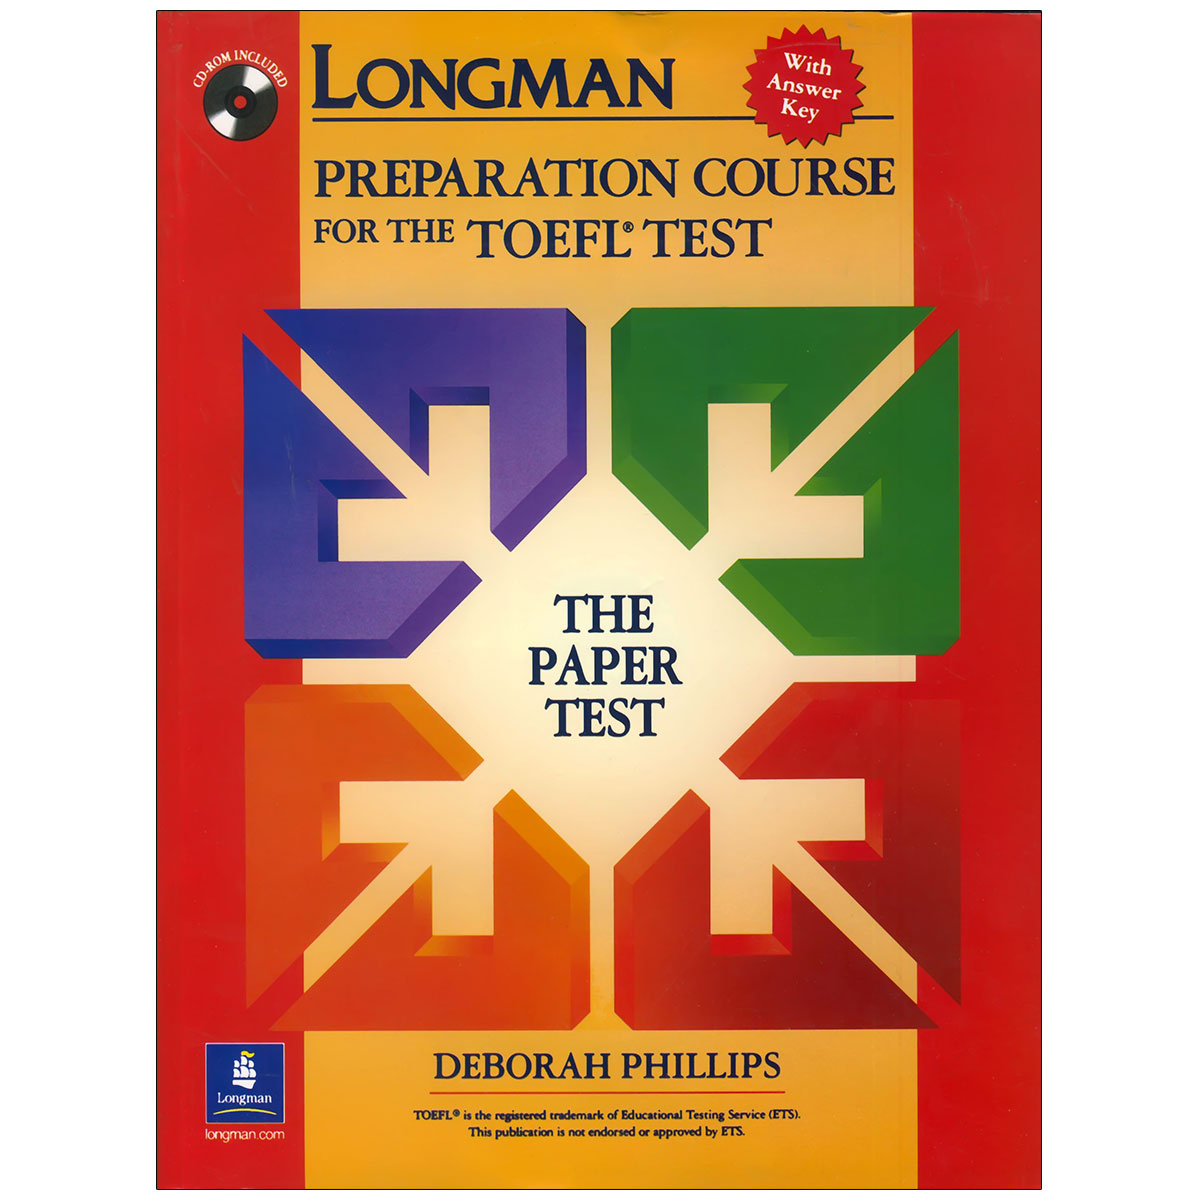 خرید کتاب Longman Preparation Course for the TOEFL Test تا 50% تخفیف ❤️ –  زبانمهر